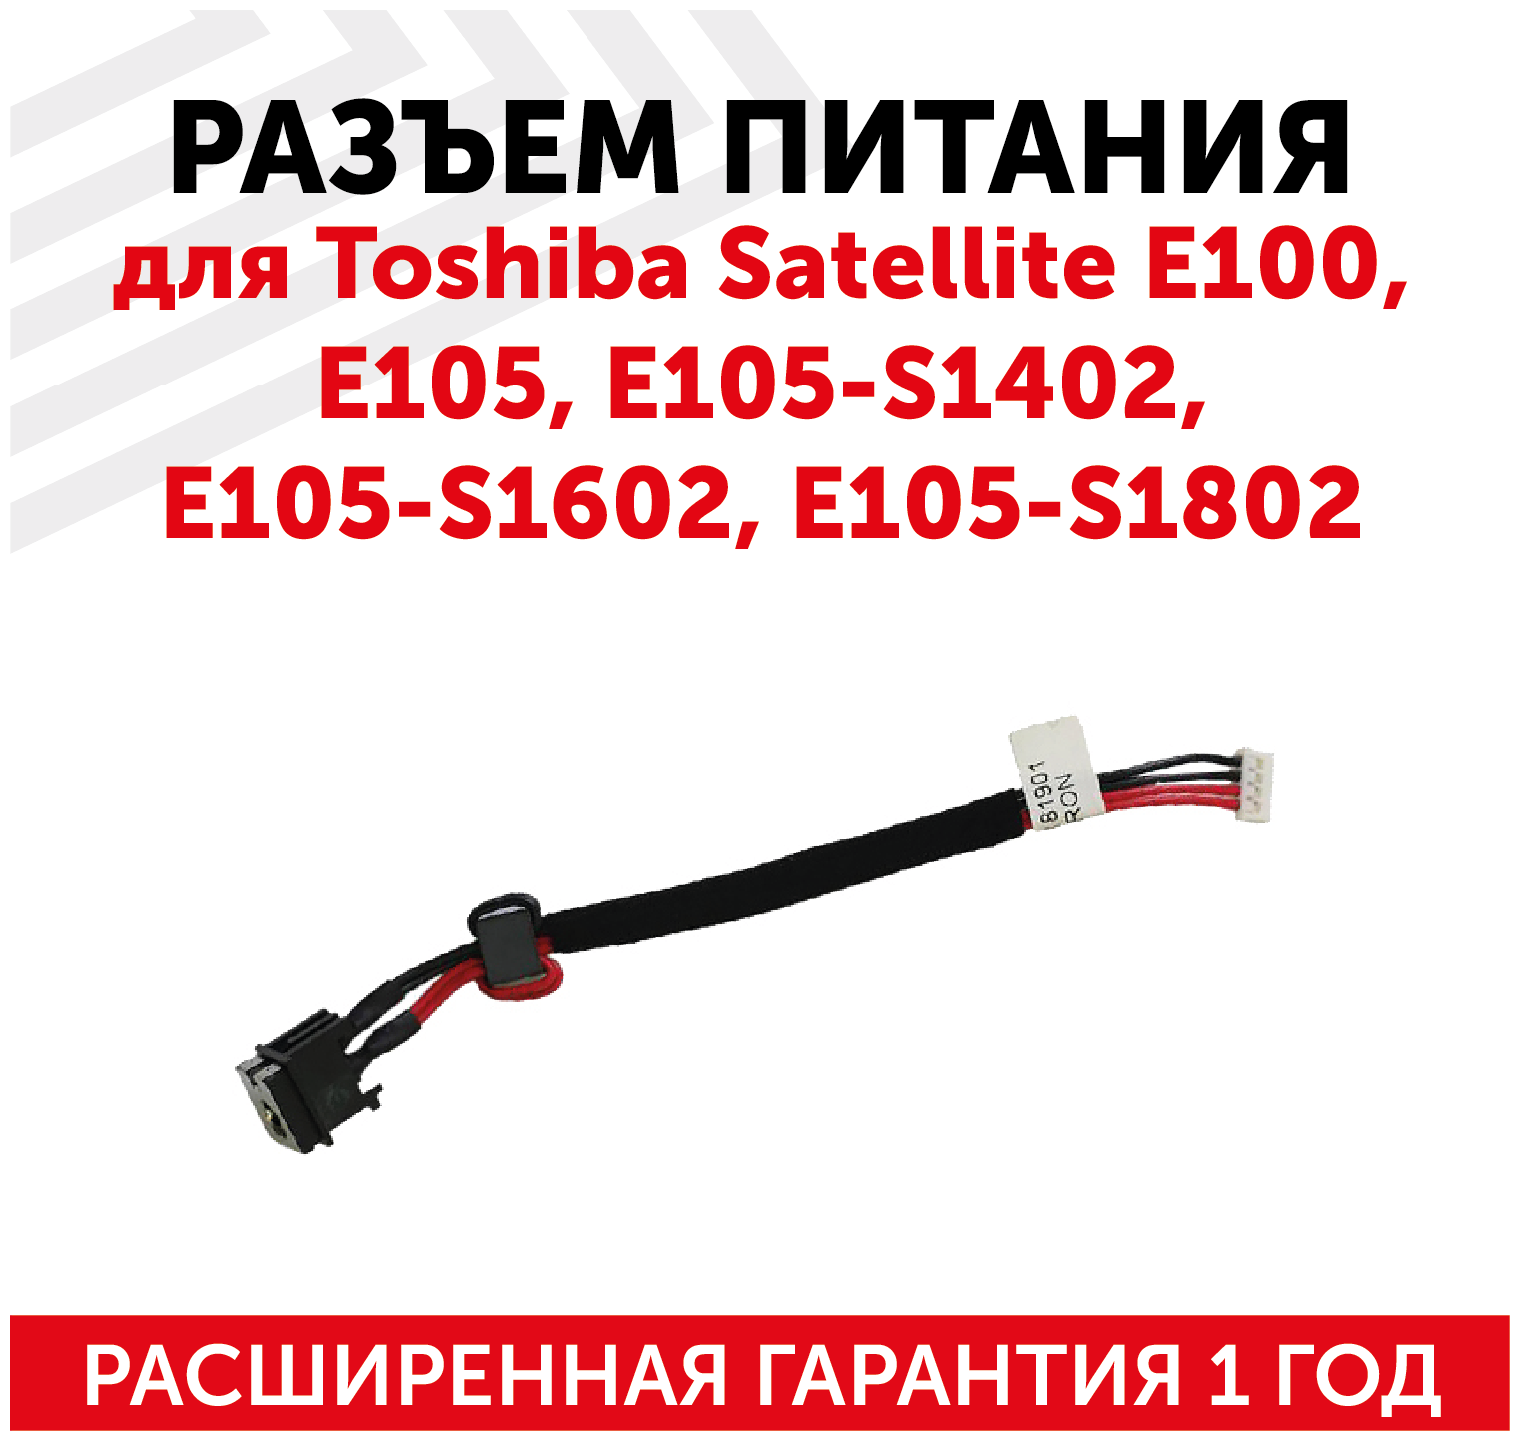 Разъем для ноутбука Toshiba Satellite E100, E105, E105-S1402, E105-S1602, E105-S1802, с кабелем